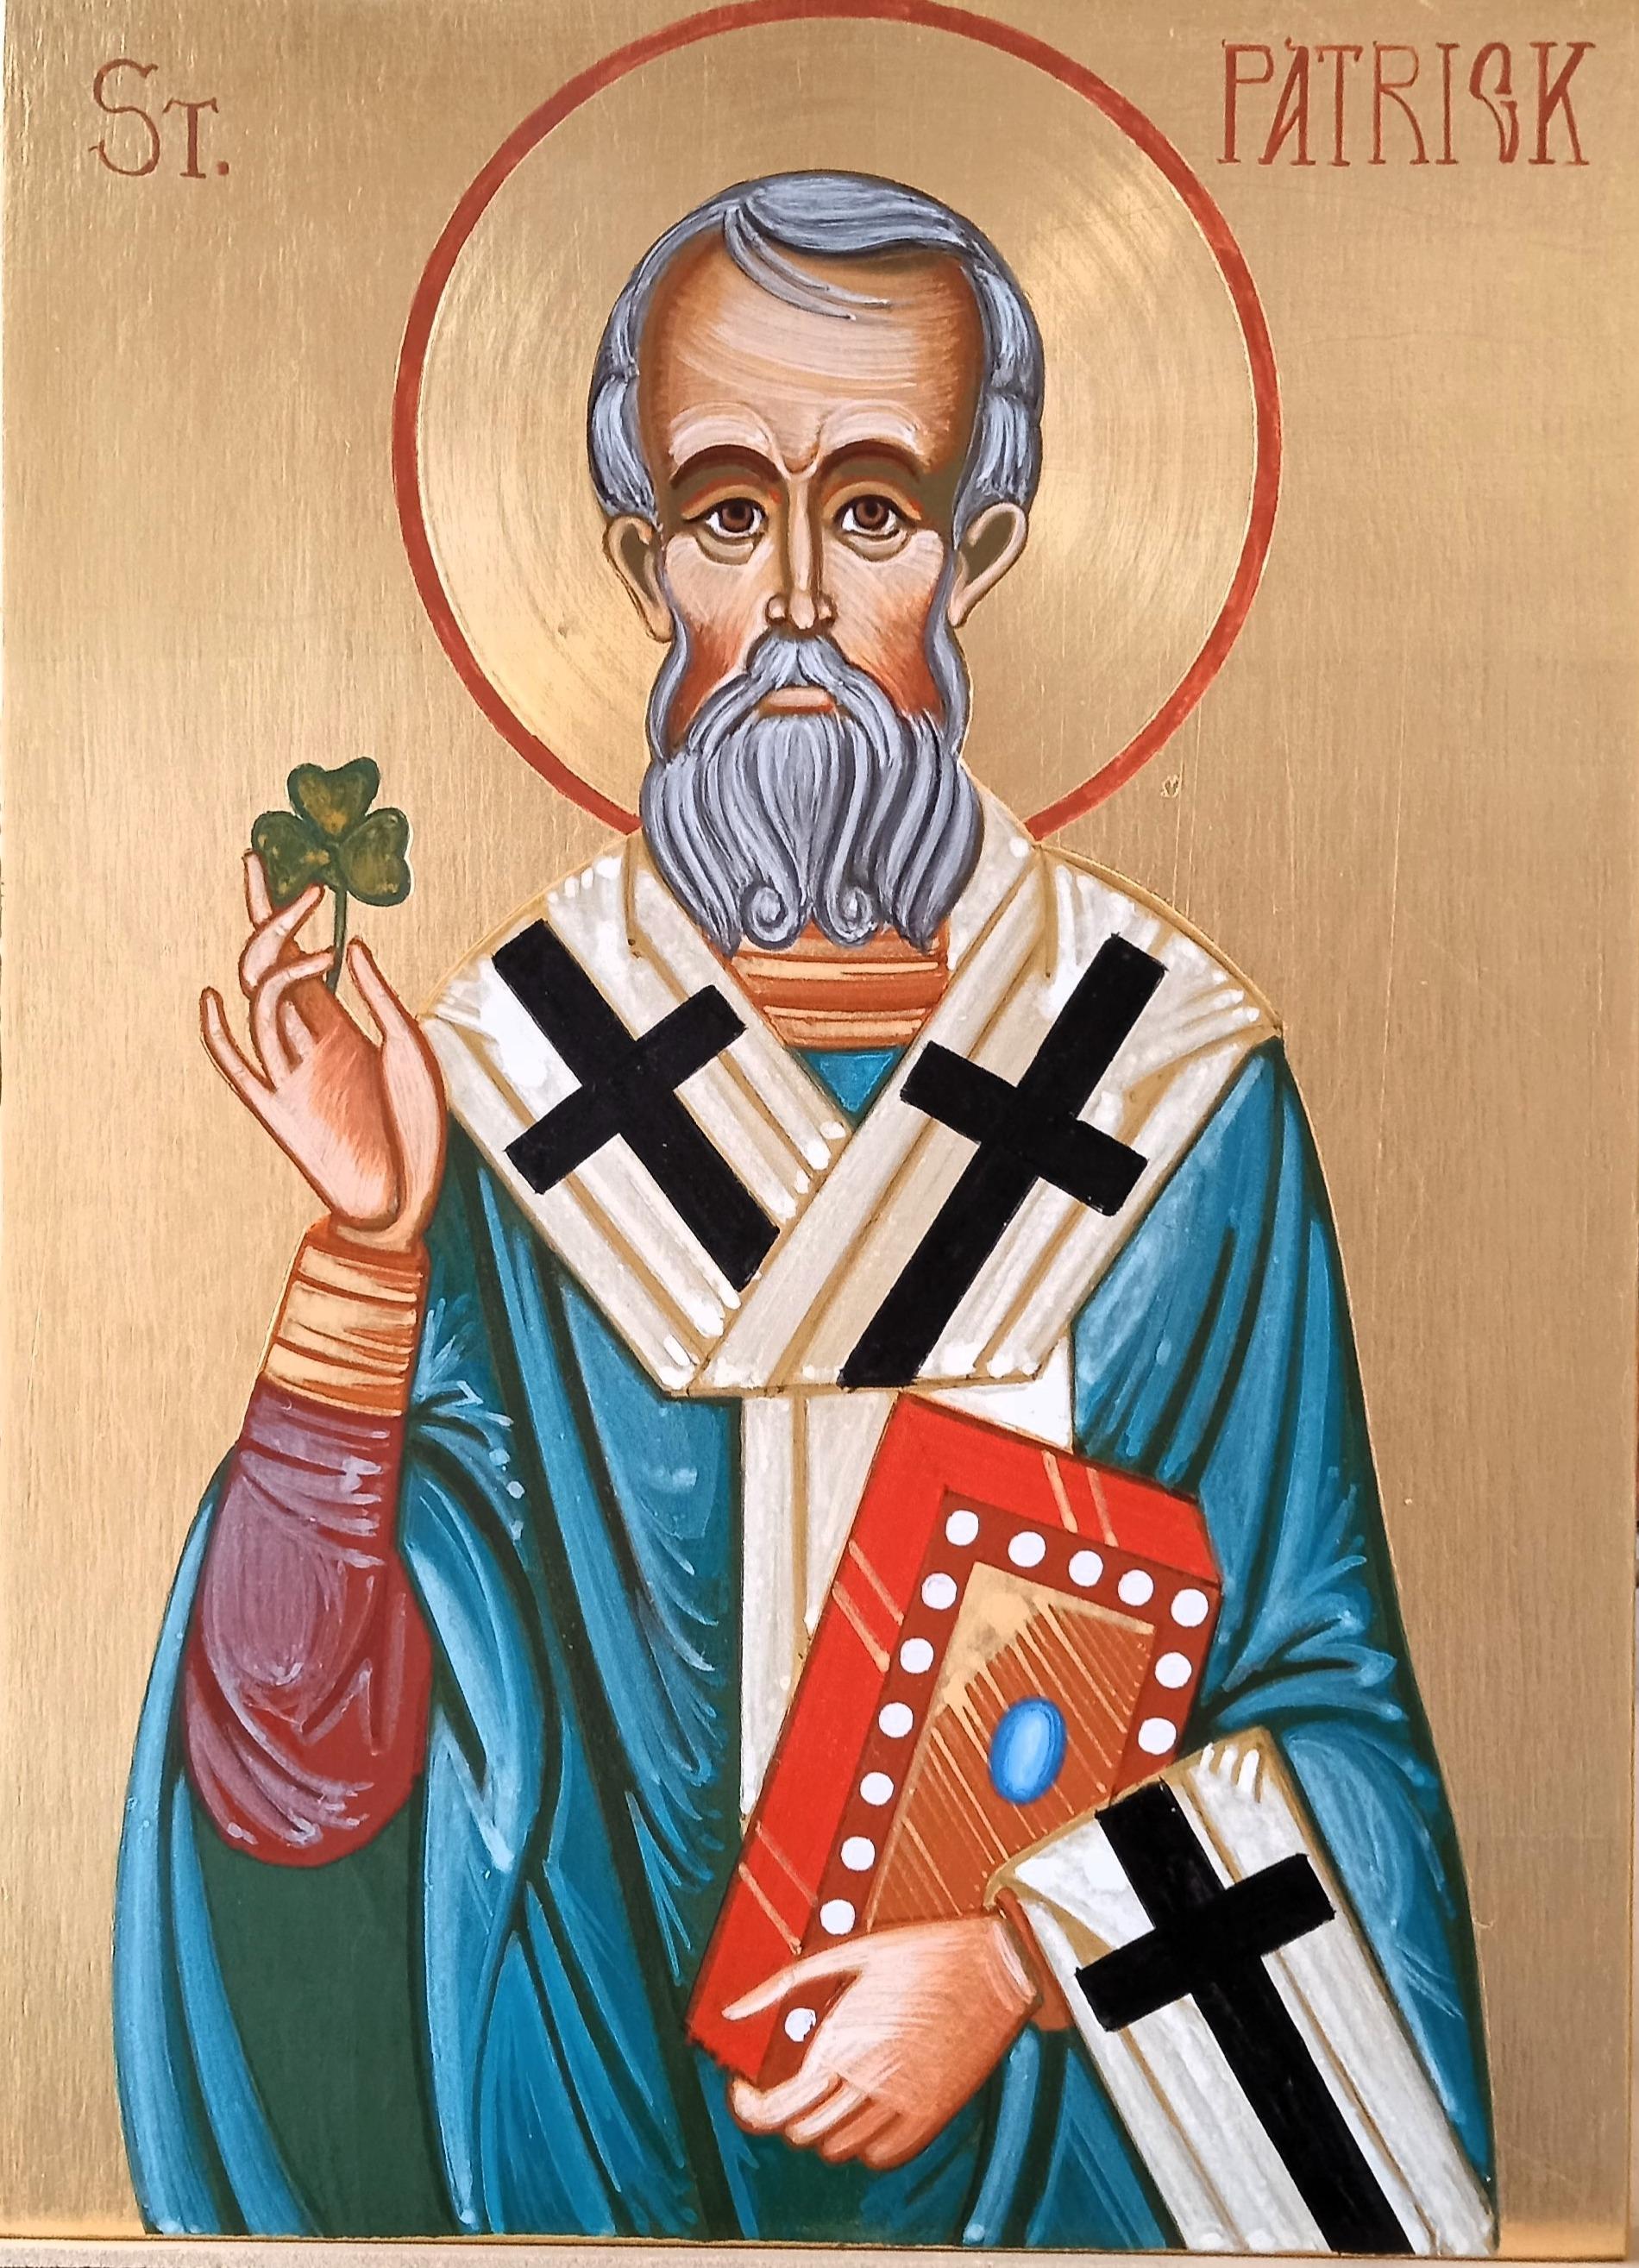 Icona ortodossa dipinta a mano da Nicola Damiano, iconografo pugliese di Manfredonia della scuola iconografica Santa Maria di Pulsano